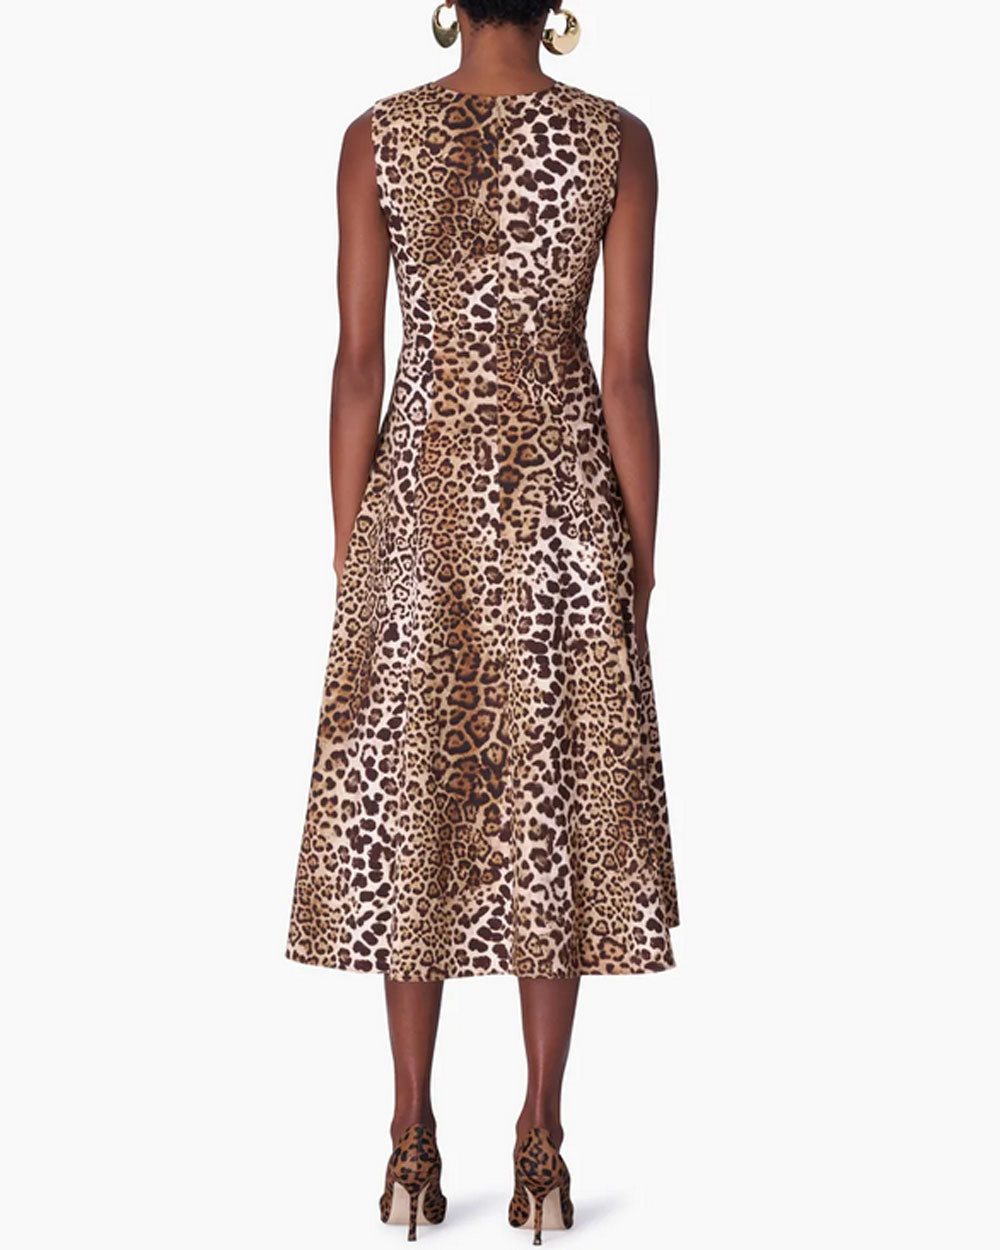 Leopard Print Sleeveless A-Line Dress